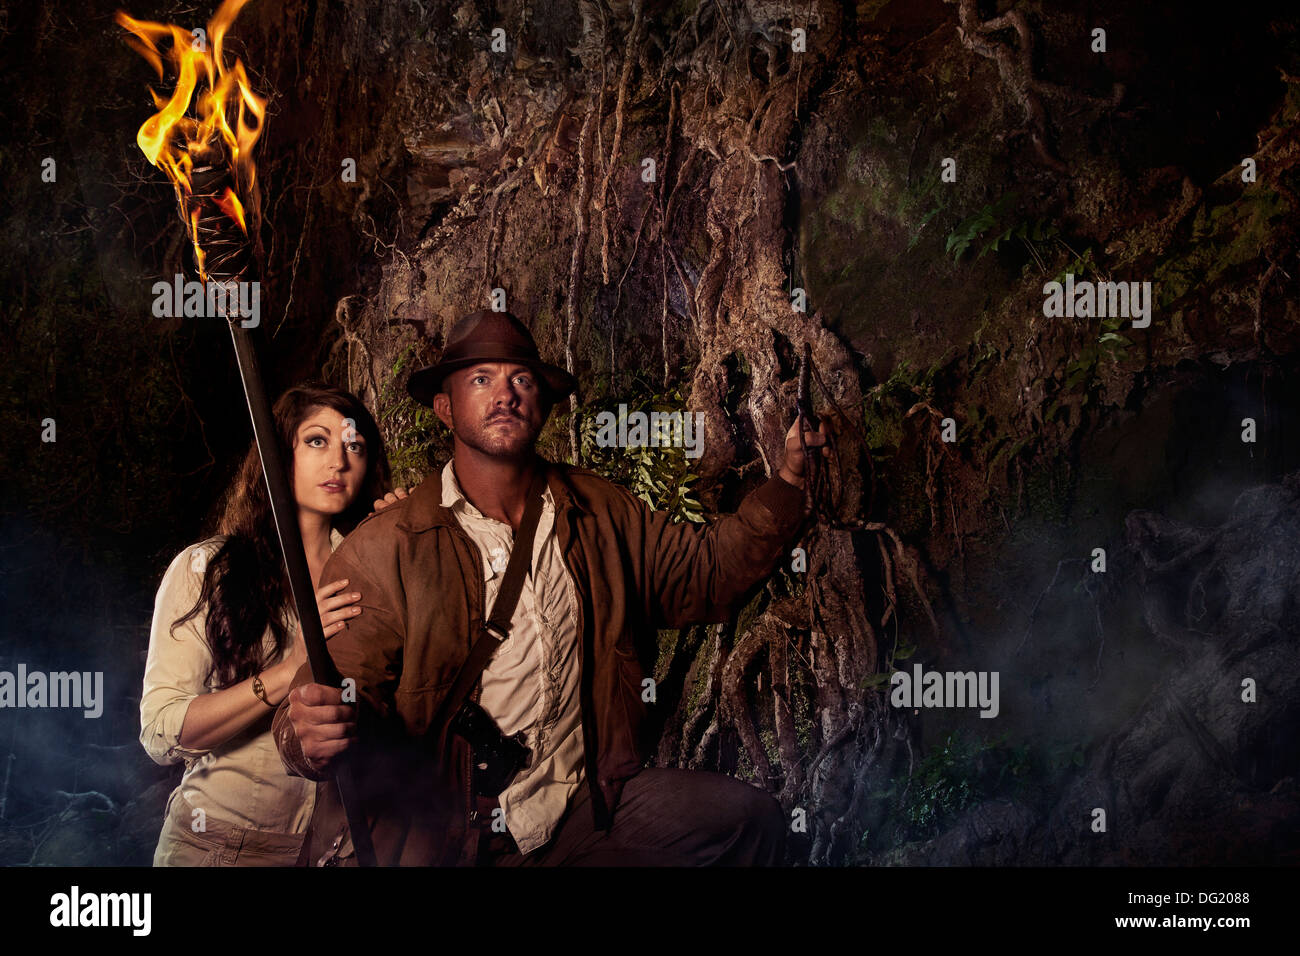 Estilo Indiana Jones Adventure hunter en la cueva con la mujer que llevaba la antorcha Foto de stock